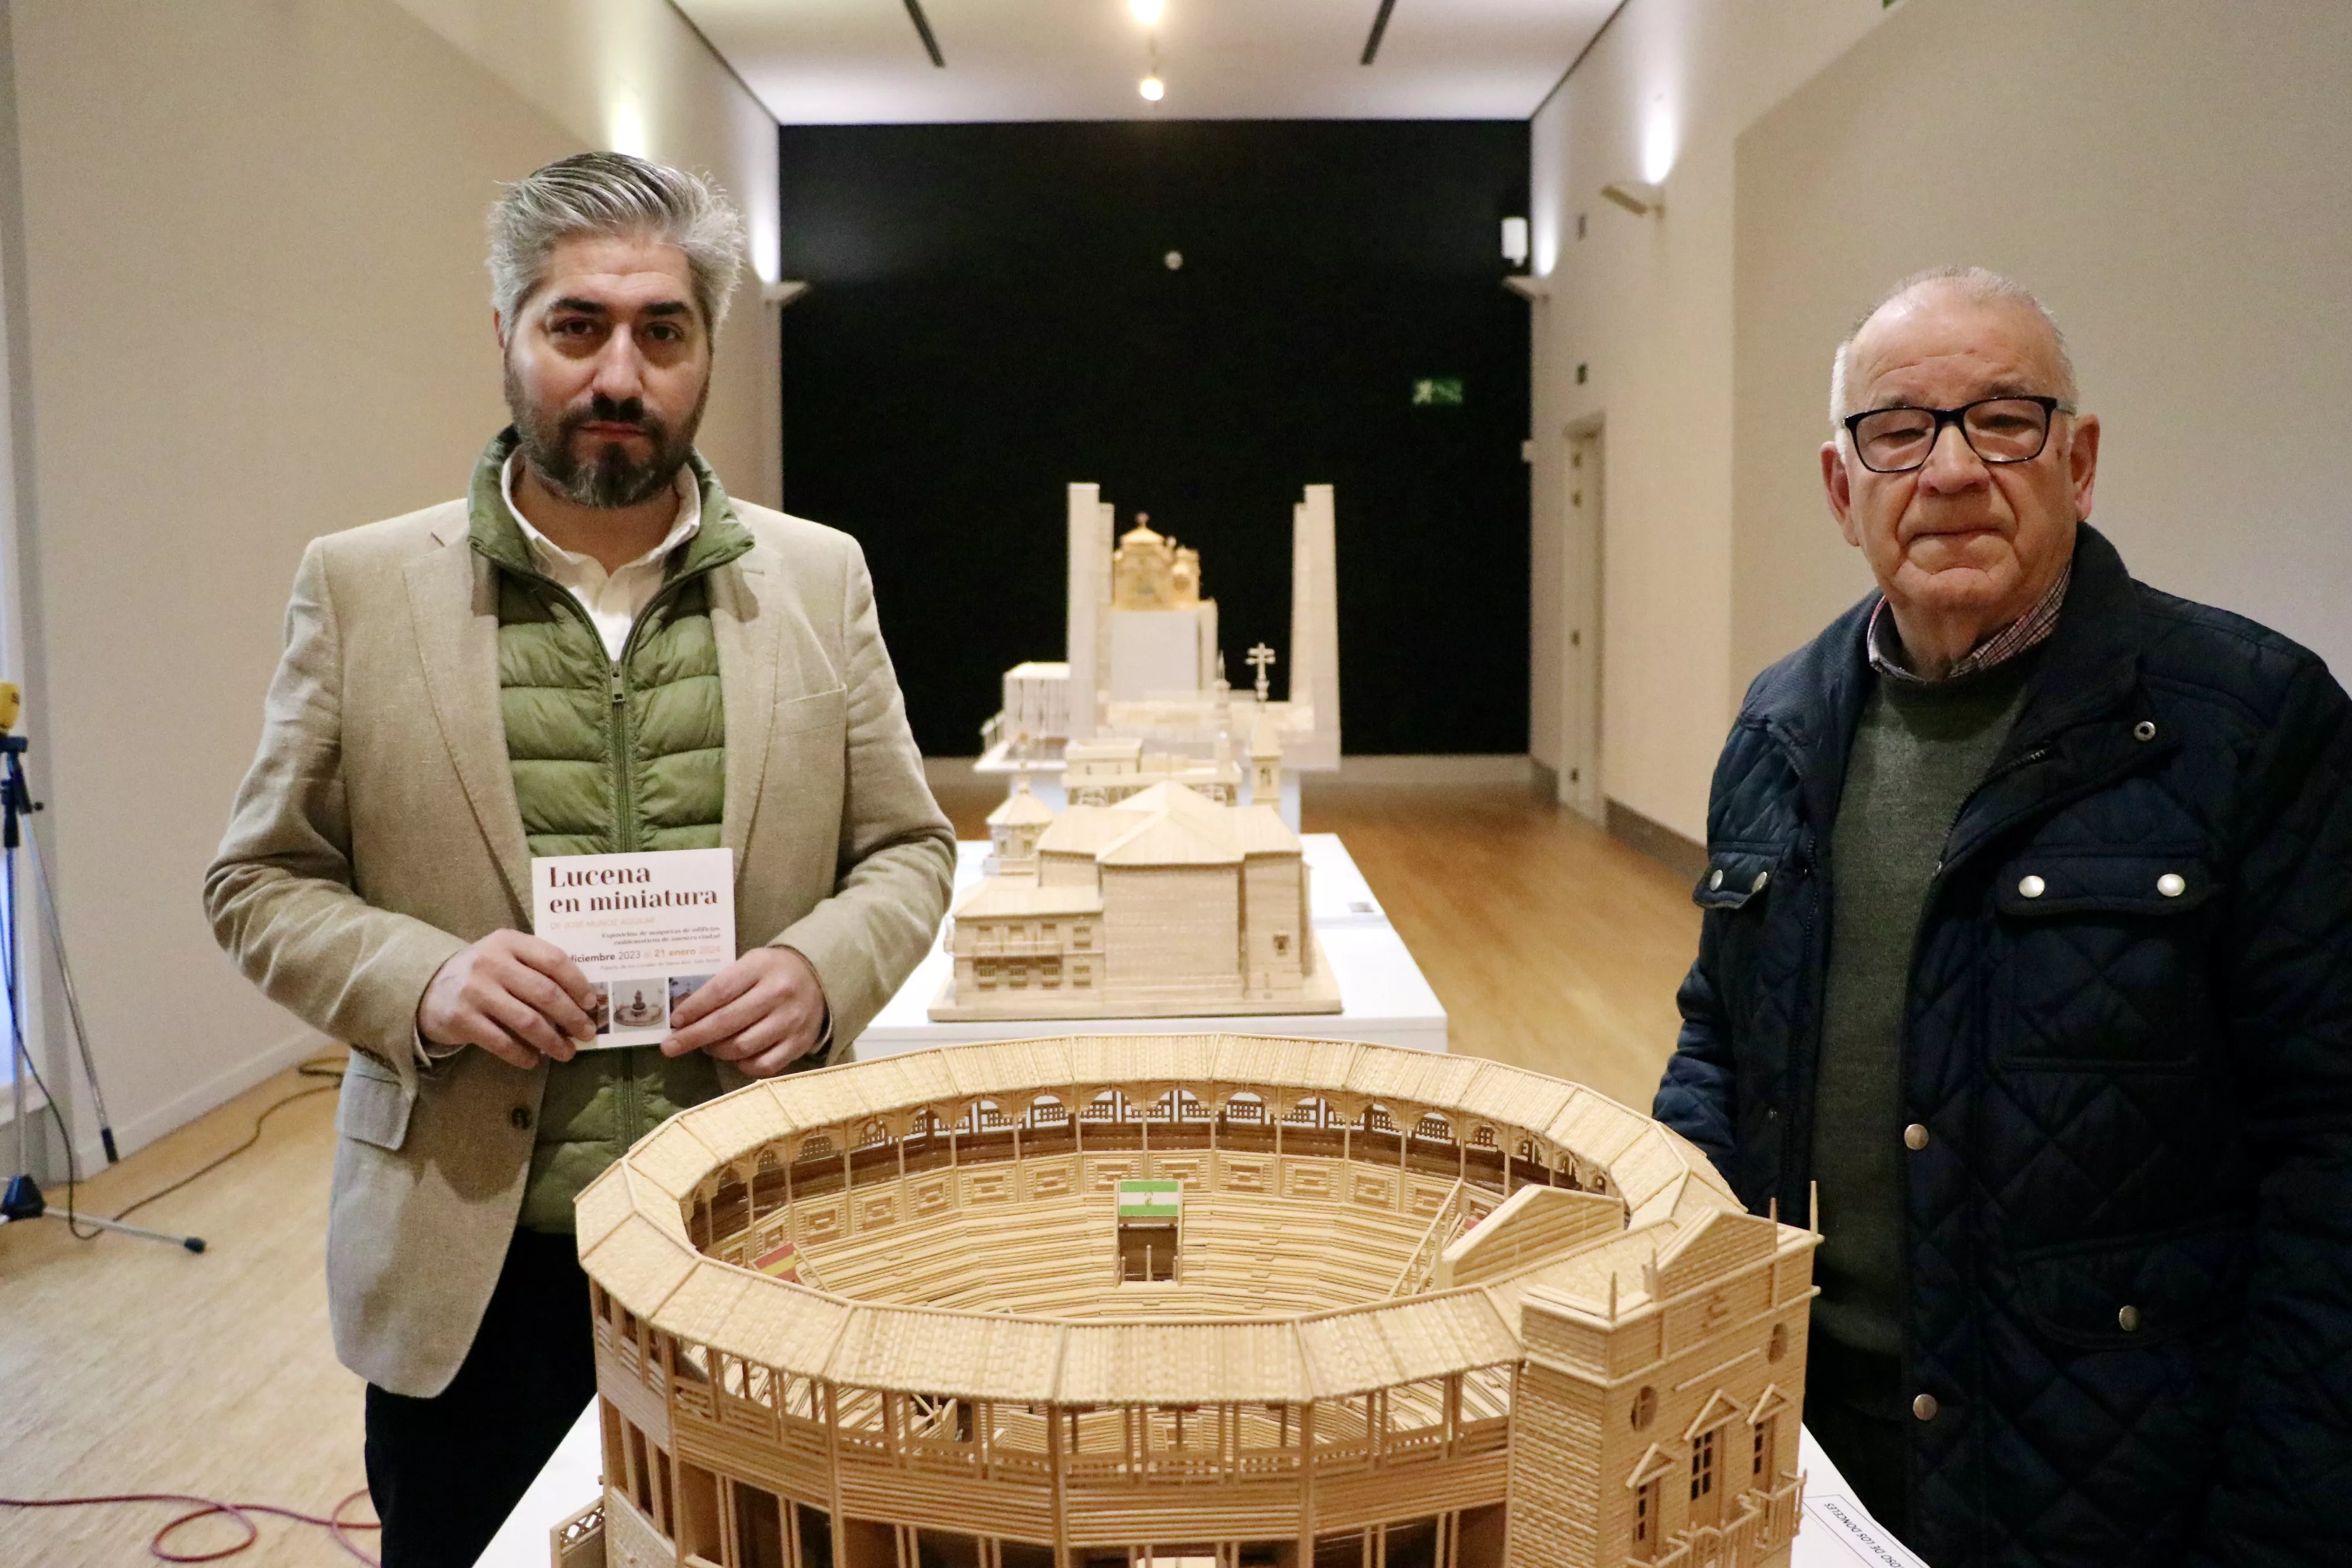 Francisco Barbancho y José Muñoz en la exposición "Lucena en miniatura" 